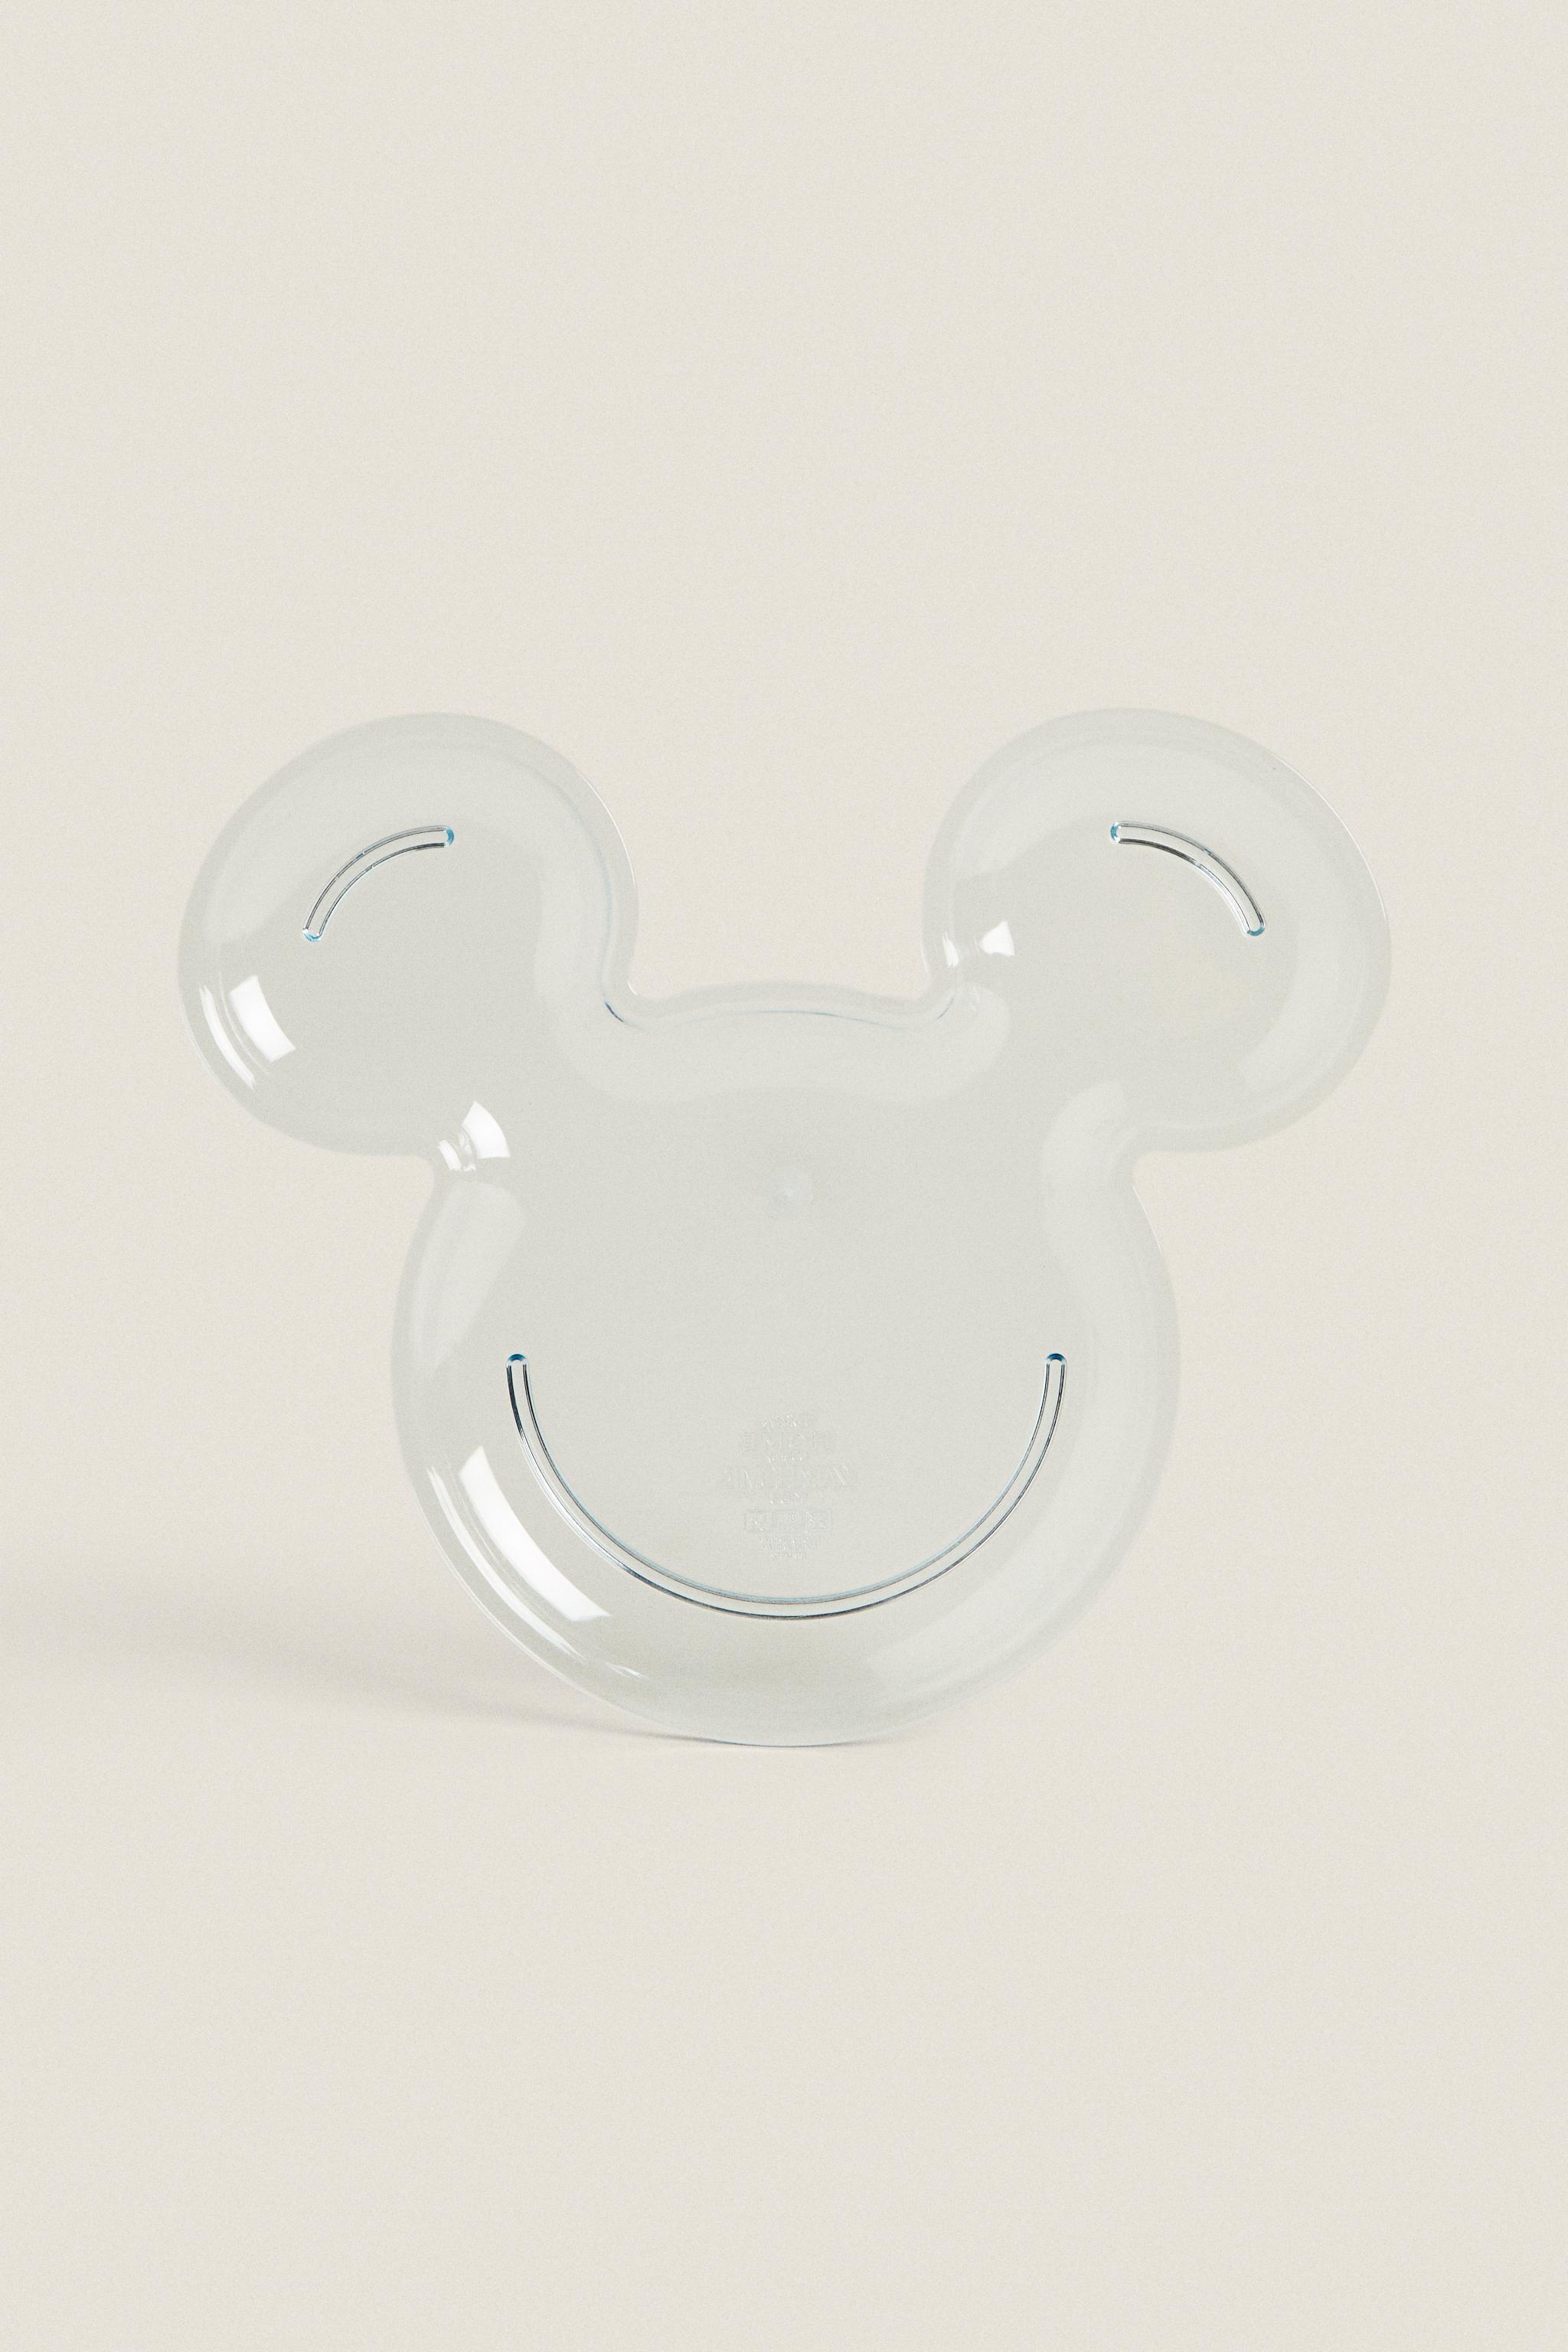 4trapalo - 🤩Set de vajilla Mickey Mouse🥣 ✔️3 piezas: taza